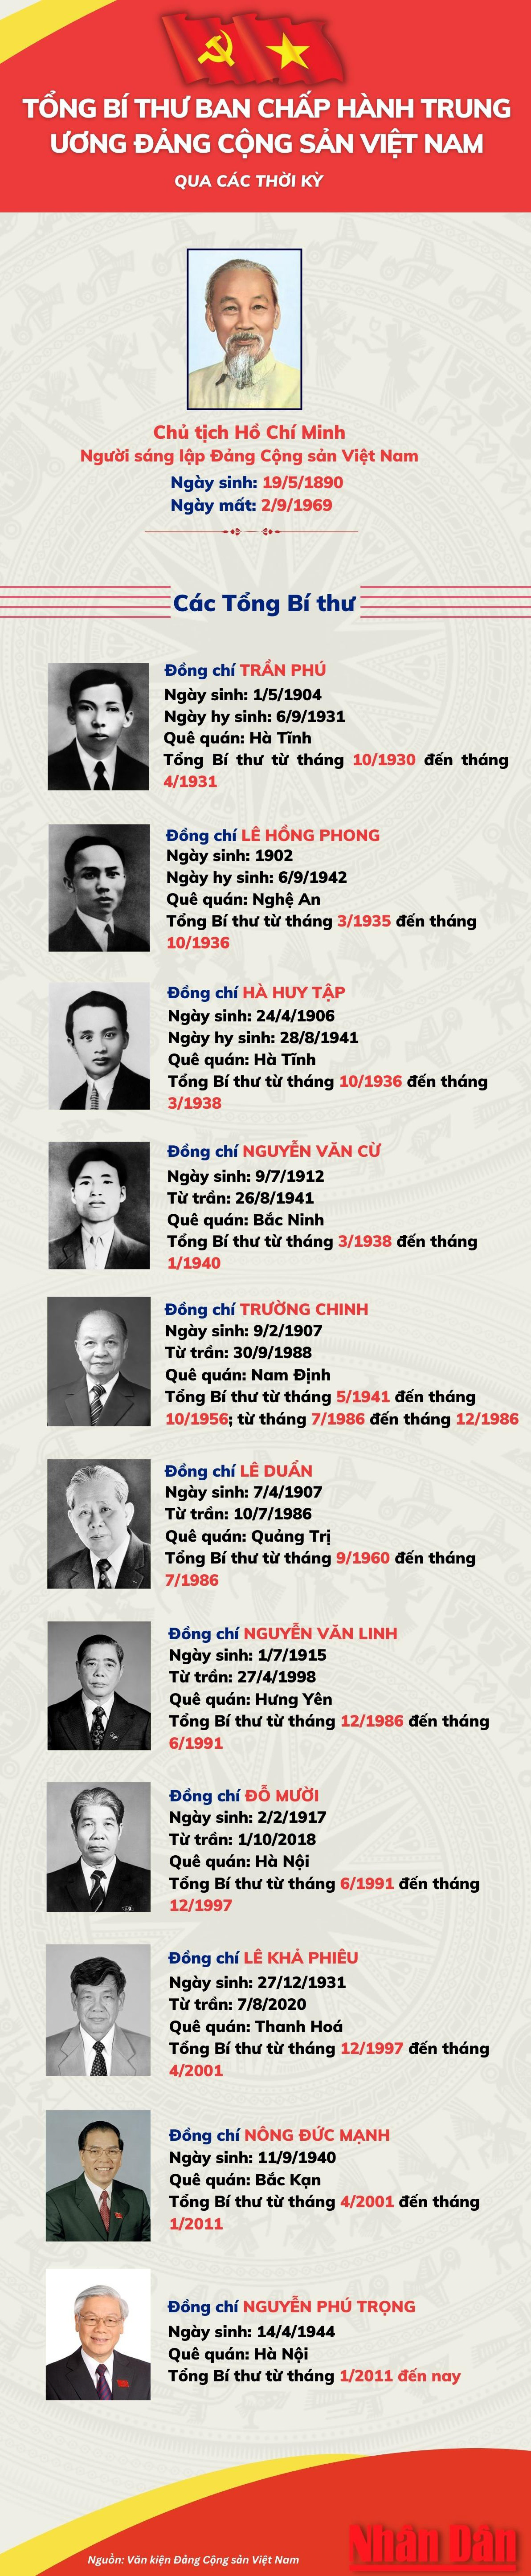 [Infographic] Tổng Bí thư Đảng Cộng sản Việt Nam qua các thời kỳ - Ảnh 1.